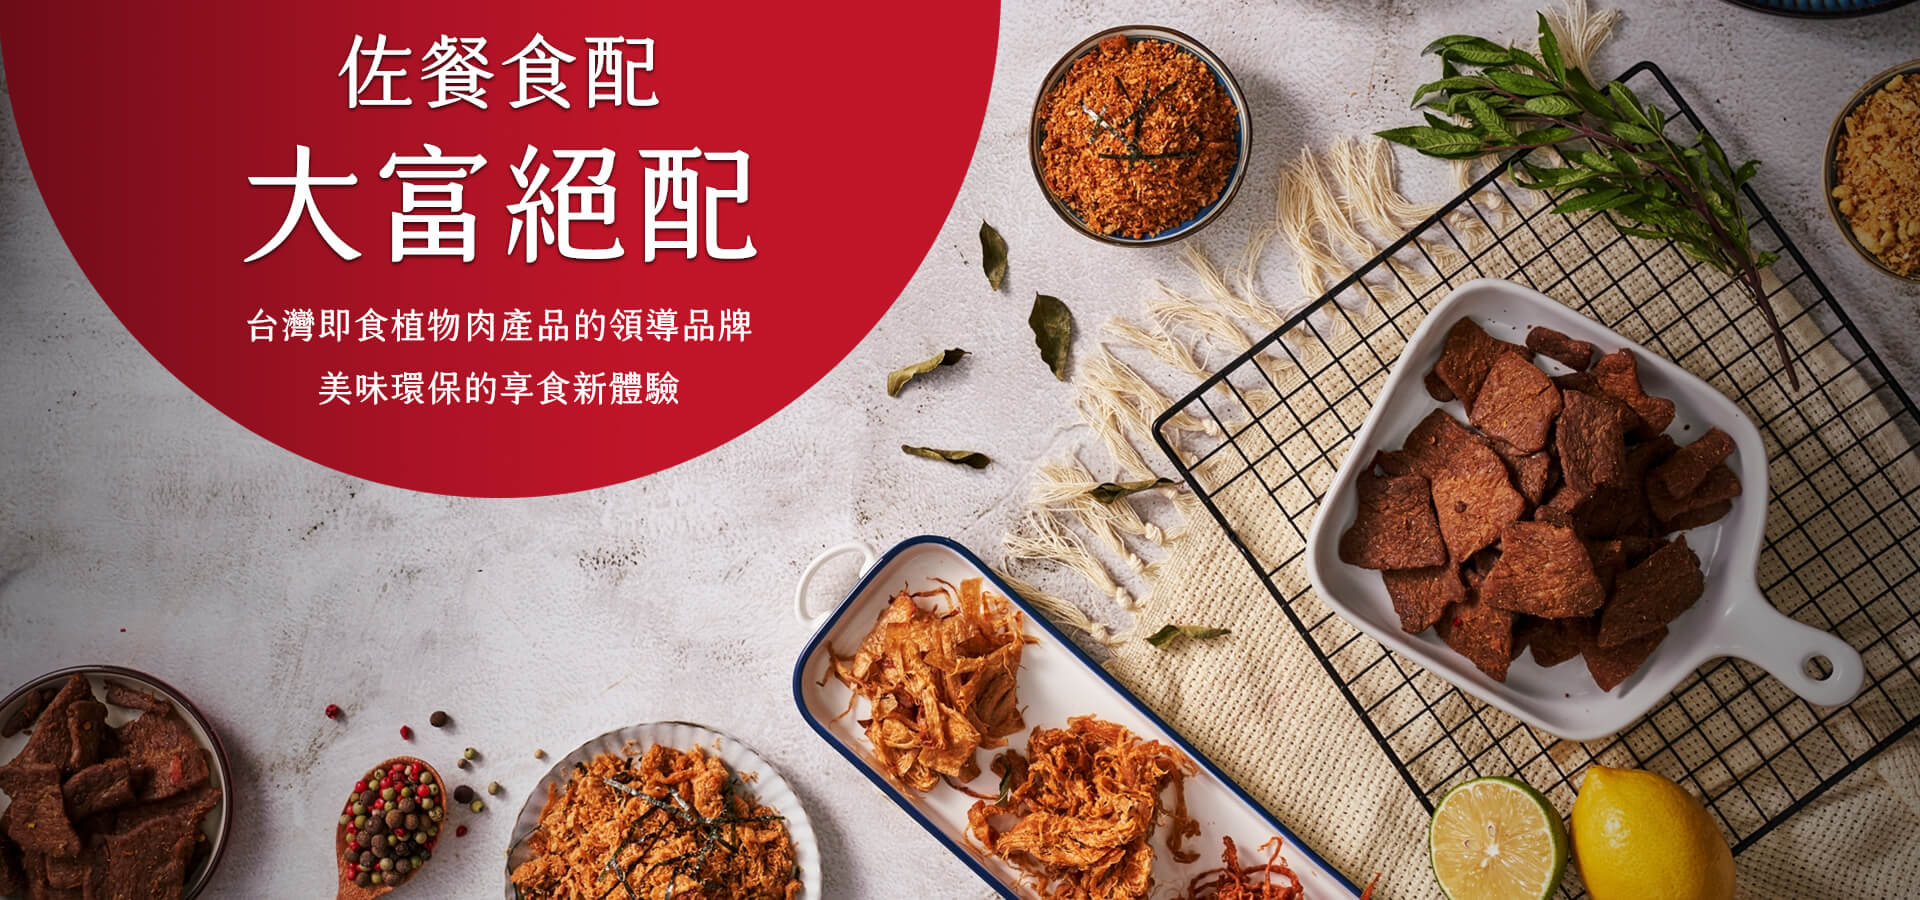 台灣即食植物肉產品的領導品牌圖片展示